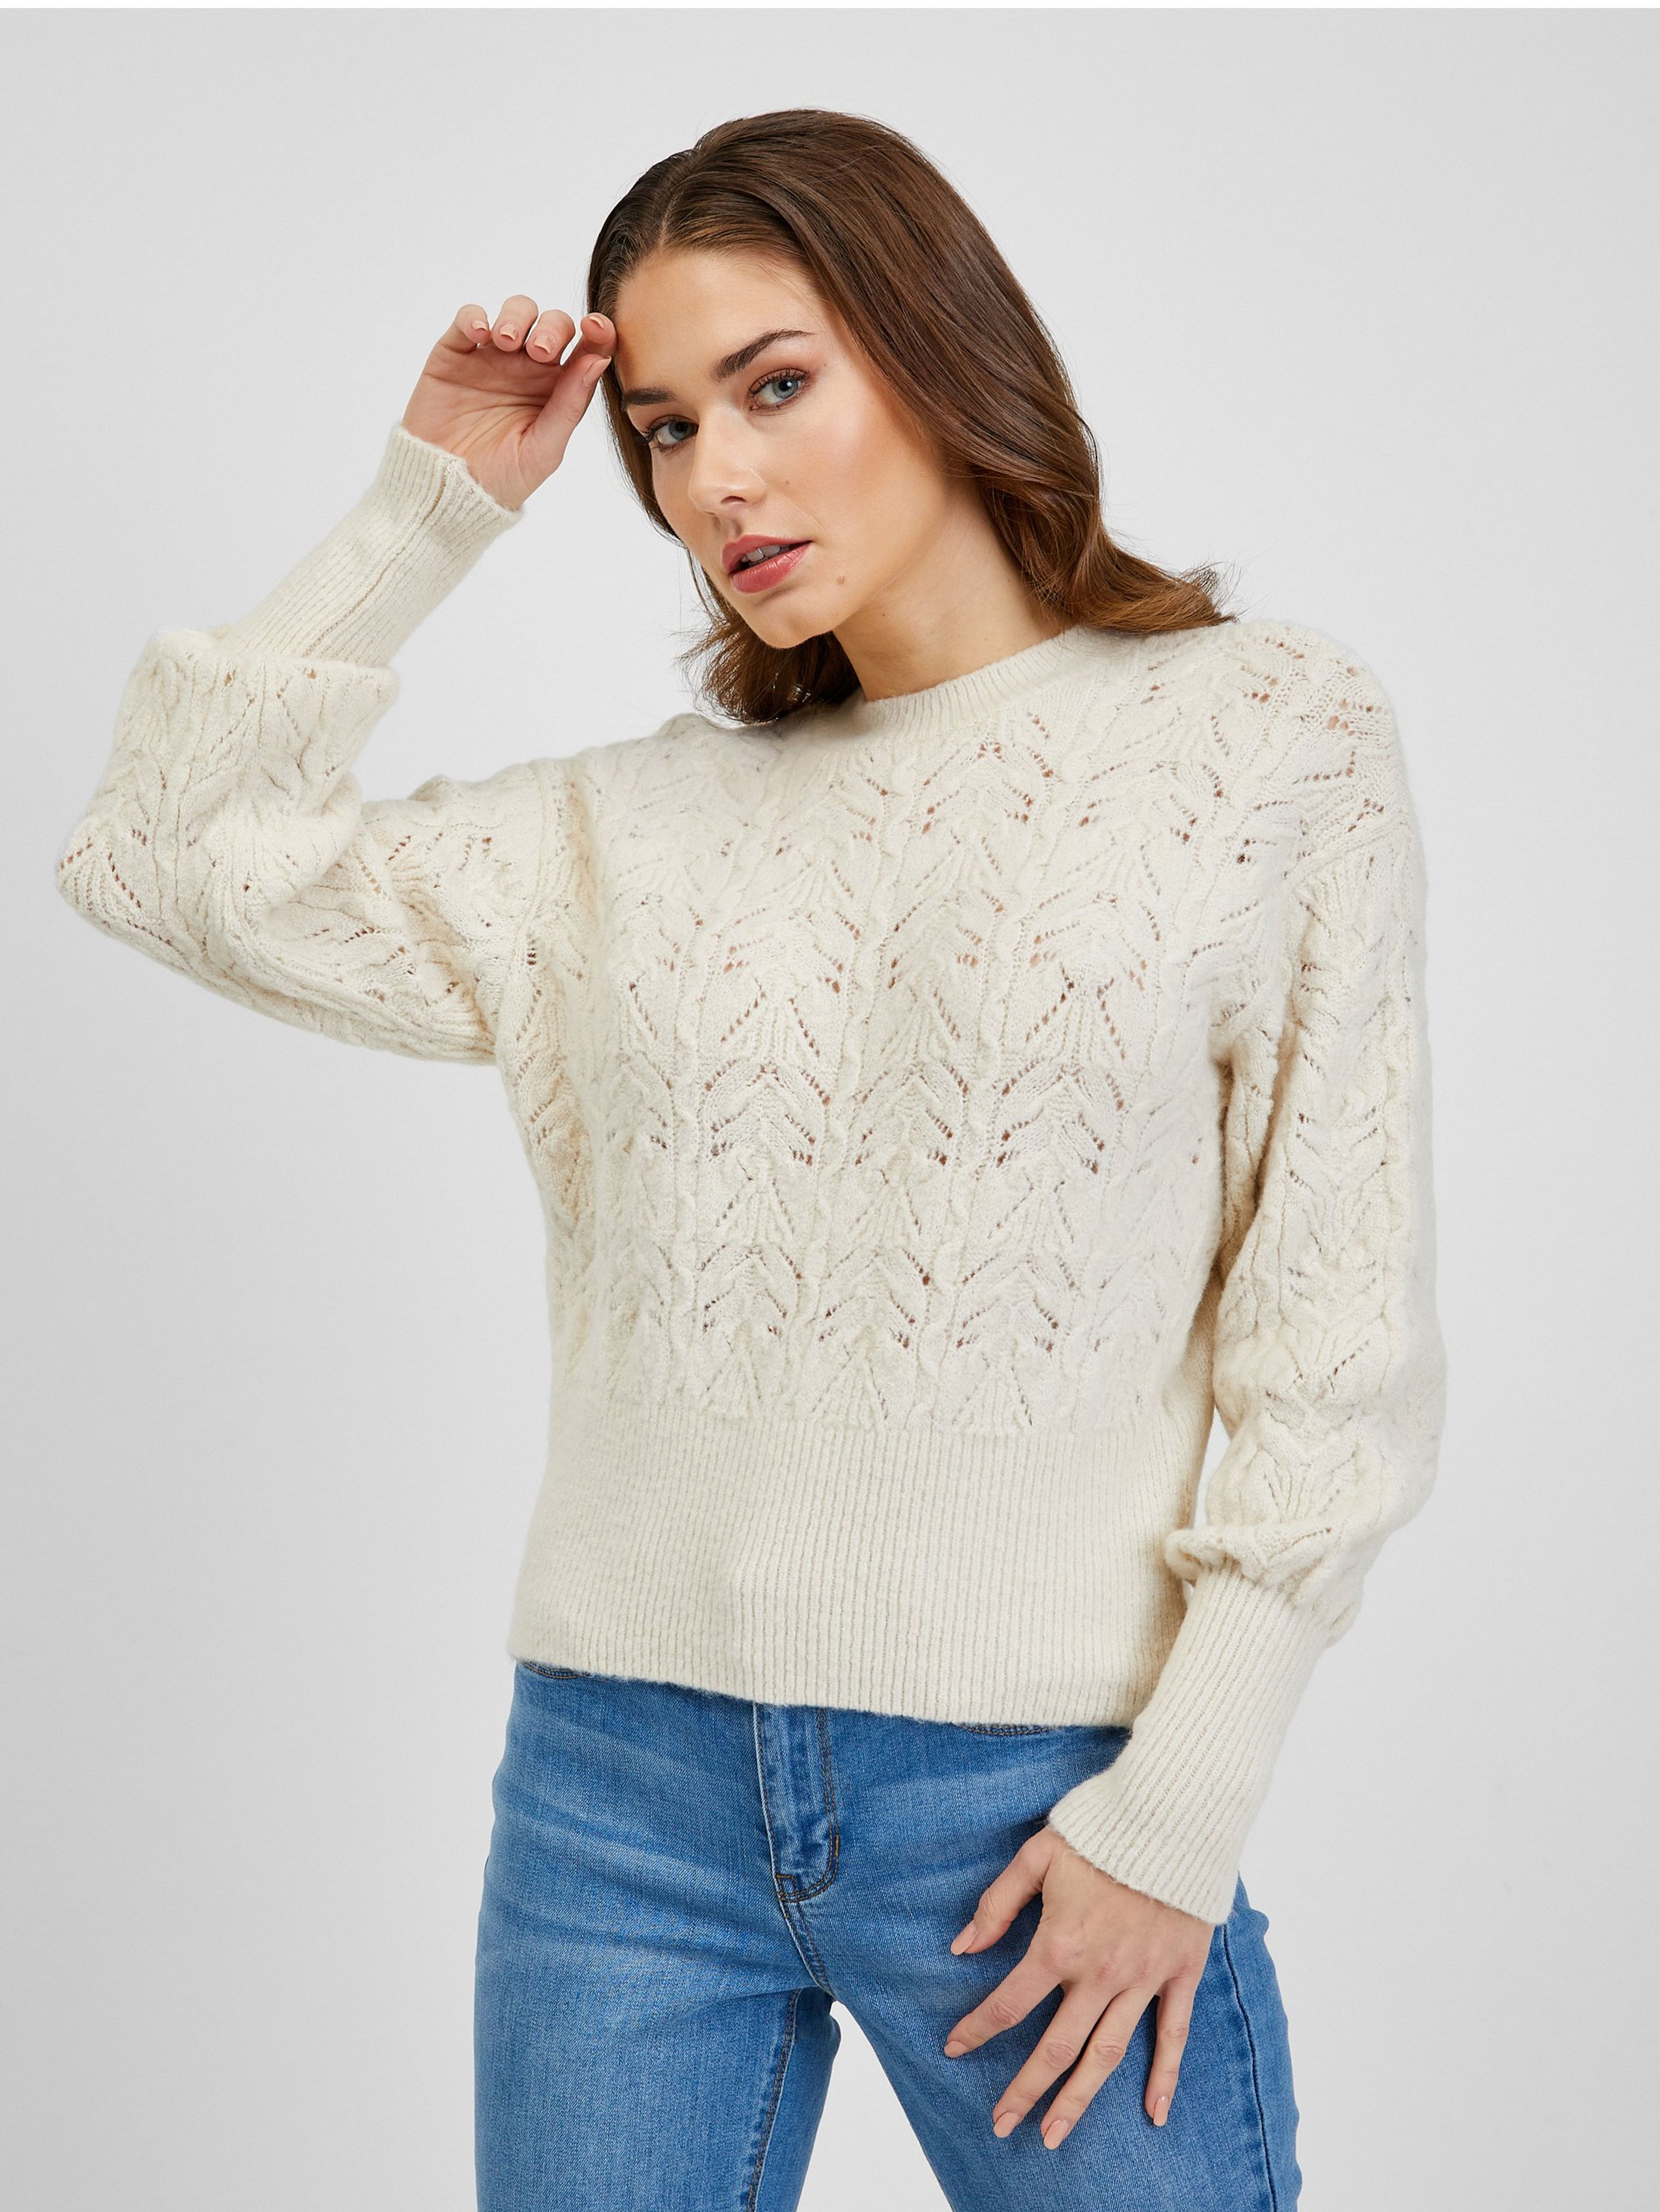 Kremowy, wzorzysty sweter damski z bufiastymi rękawami ORSAY